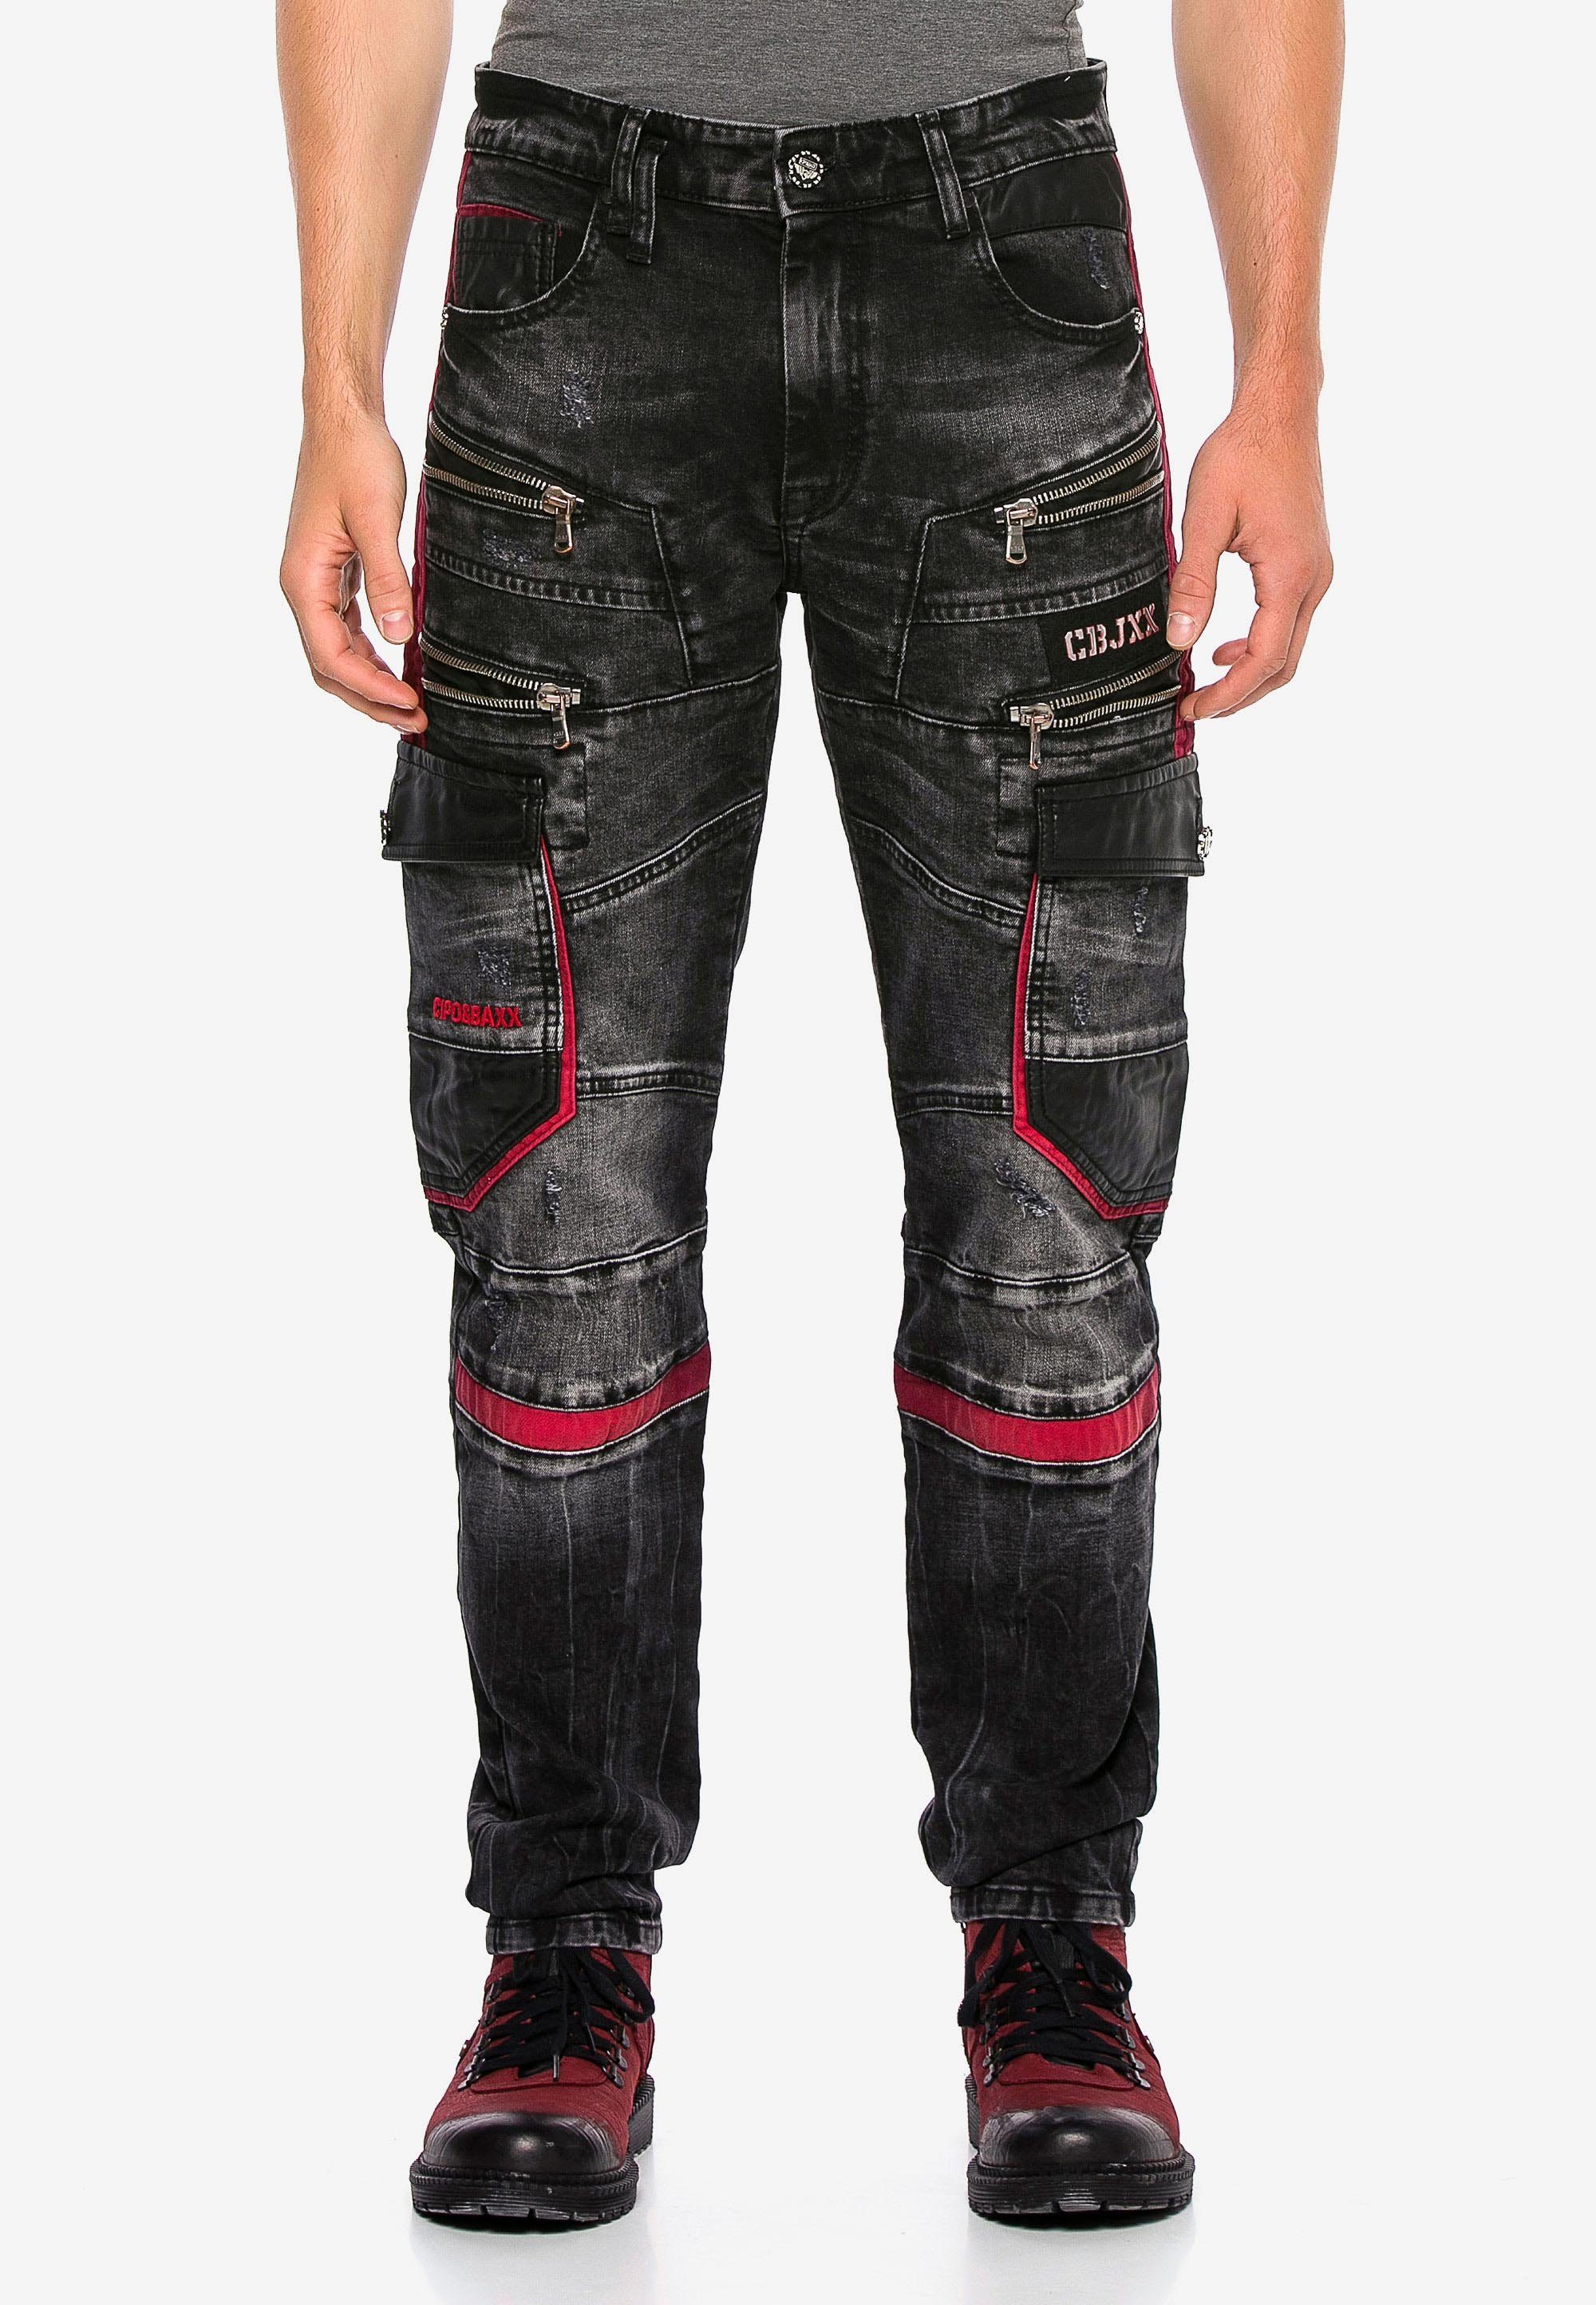 Super Sonderpreise Cipo & Baxx Elementen auffälligen mit Jeans Bequeme